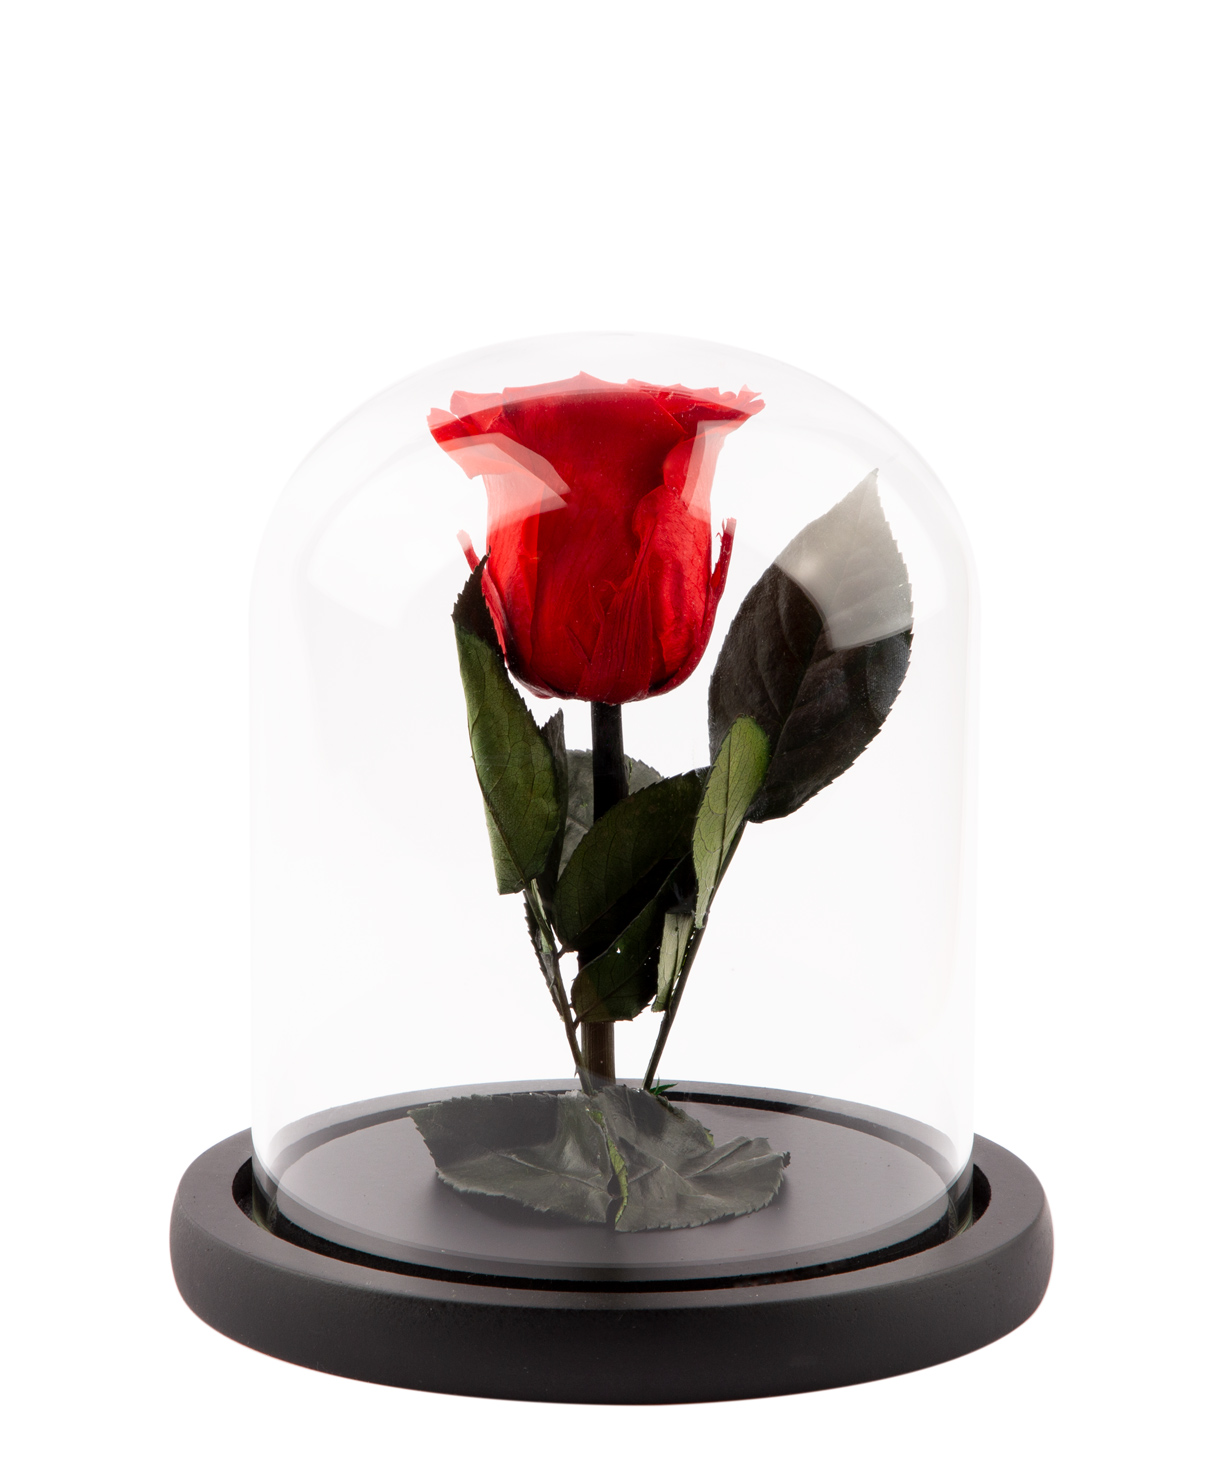 Композициа `EM Flowers` Валентин с вечной розой и воздушными шарами